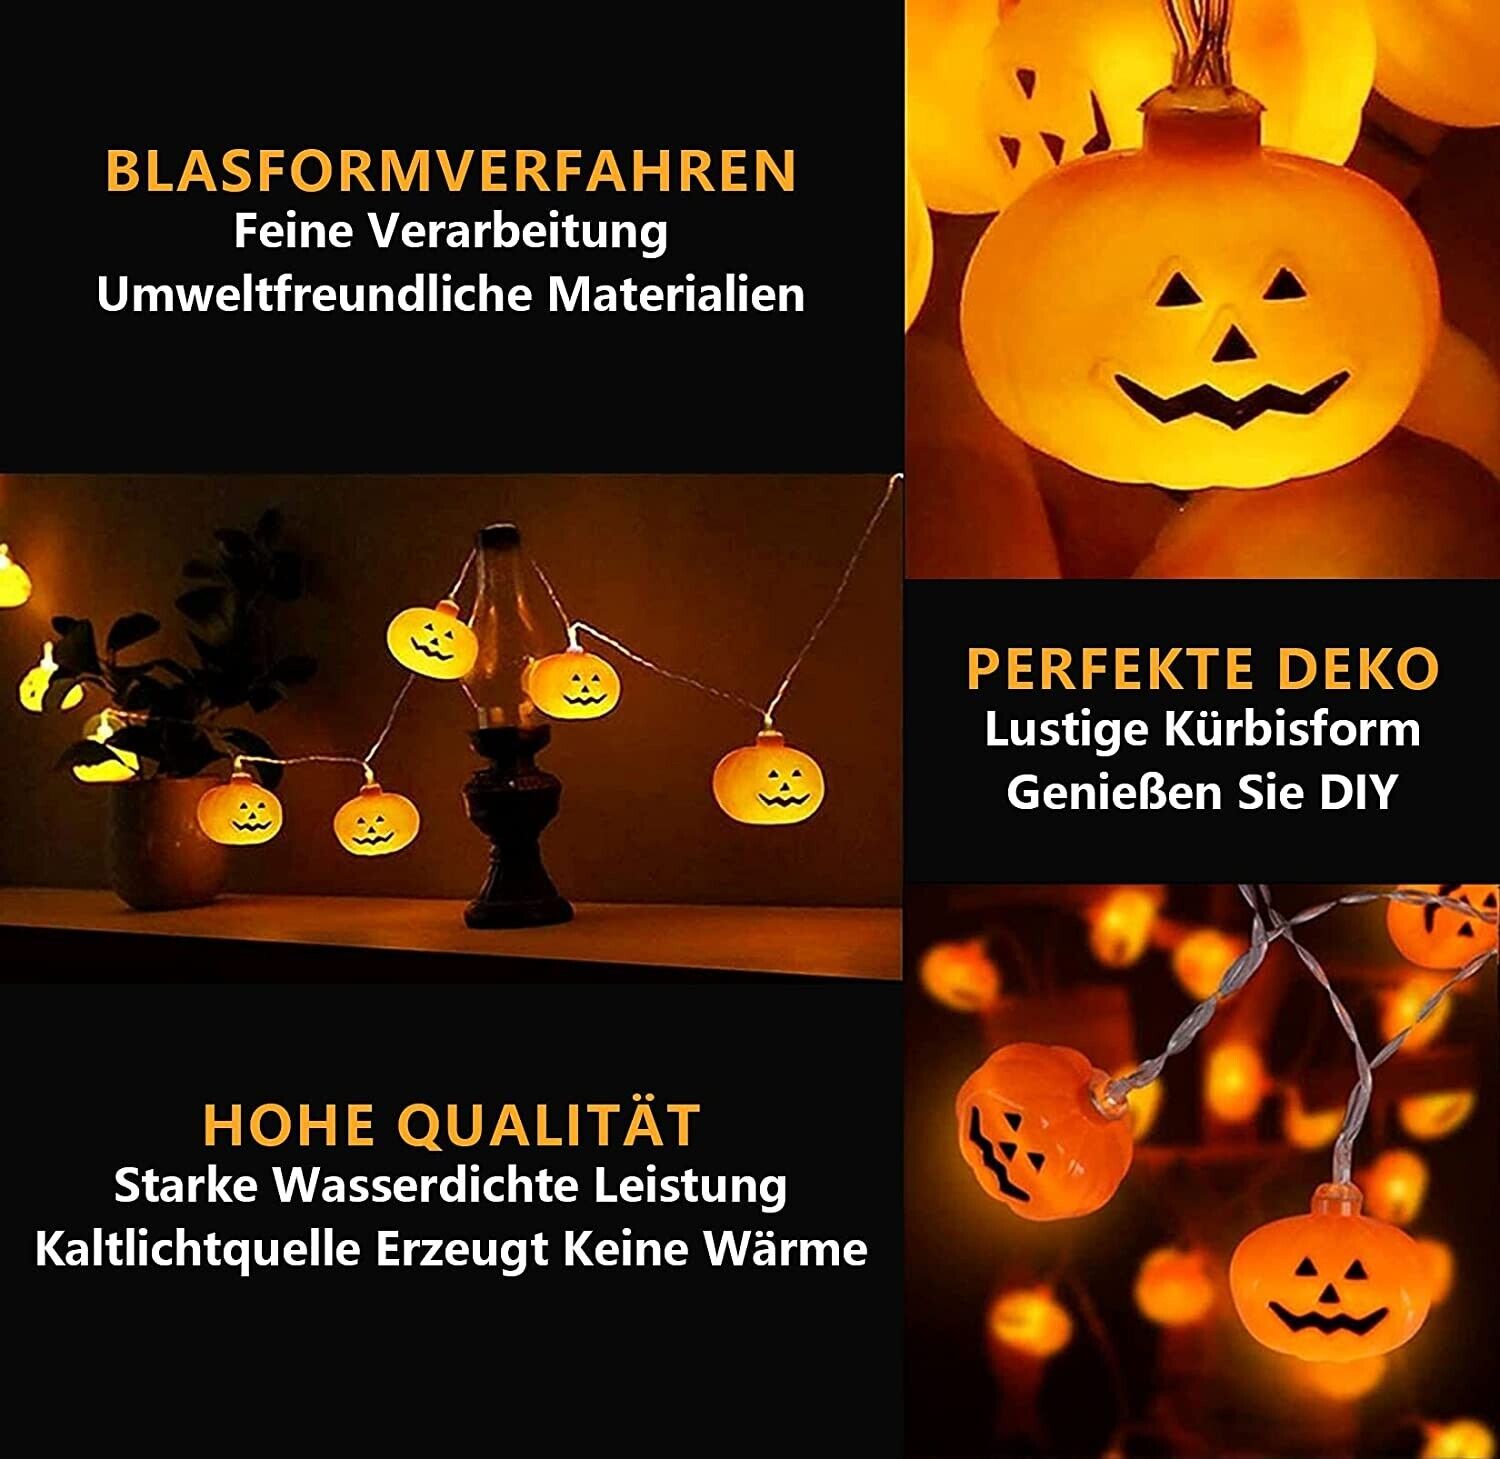 20x LED Halloween Lichterkette Geist Kürbis Hängend Beleuchtung Außen Party Deko